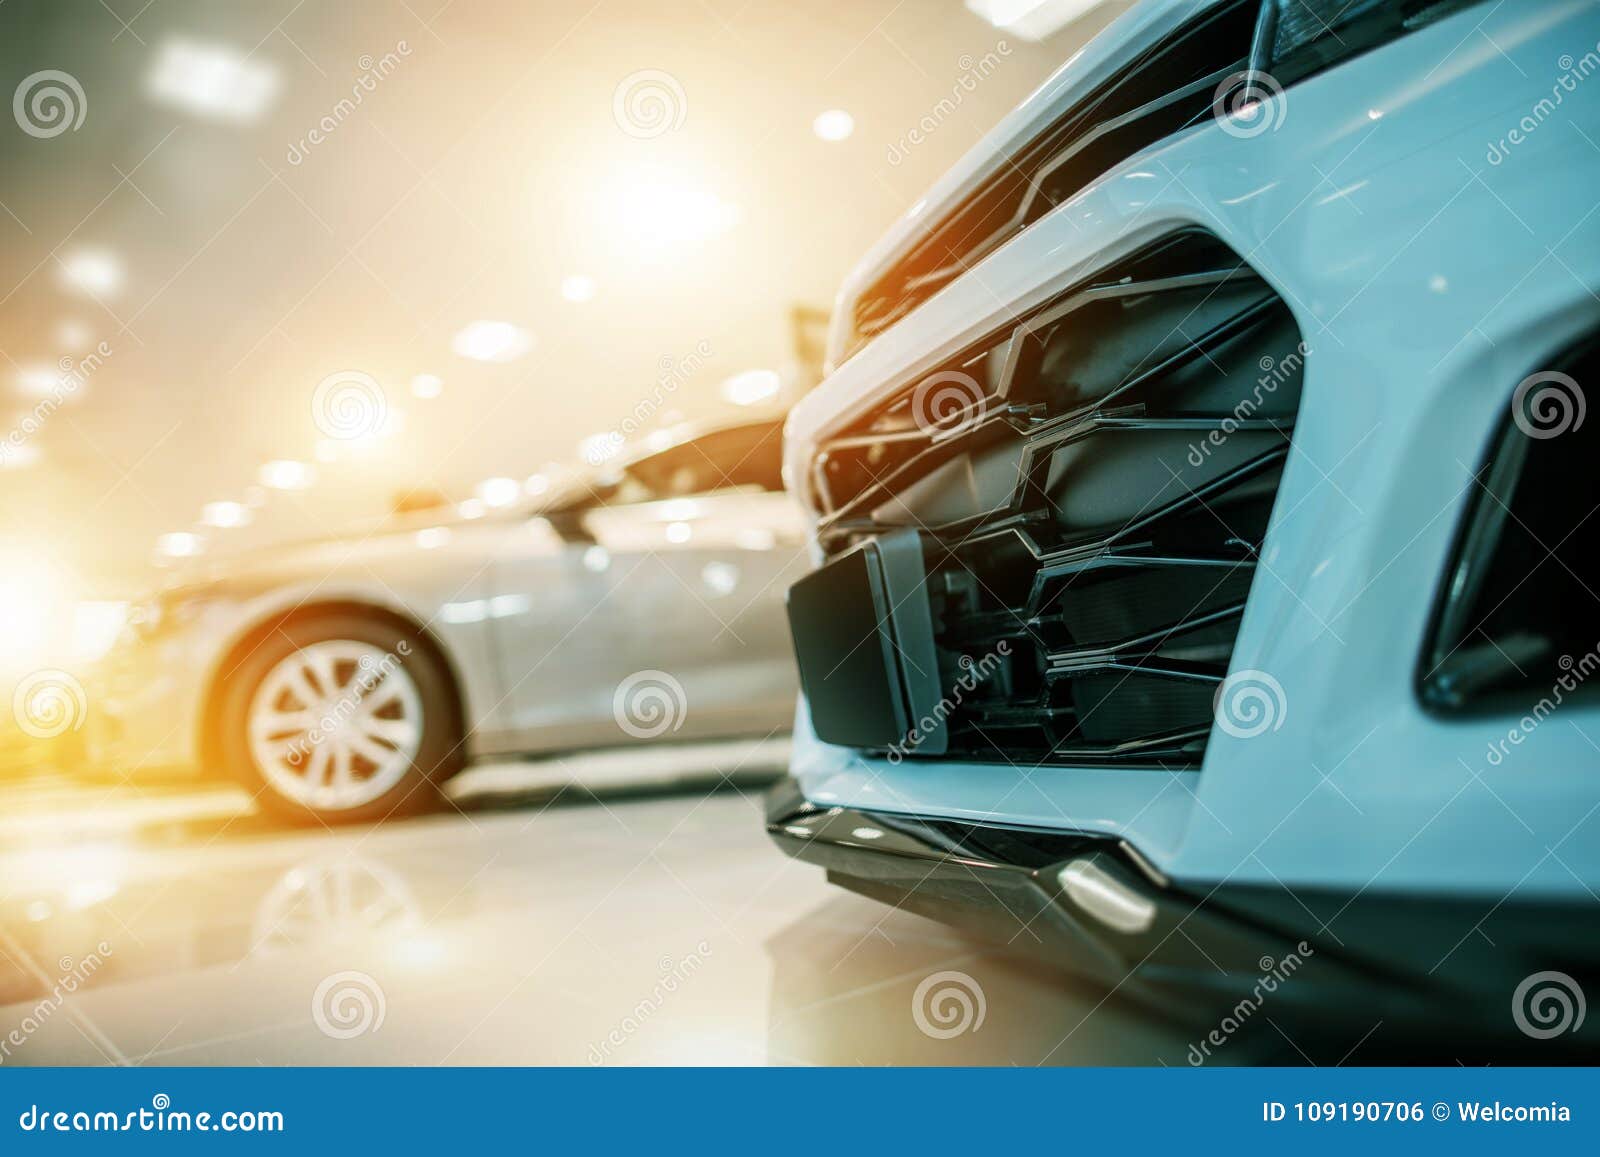 automotive car business